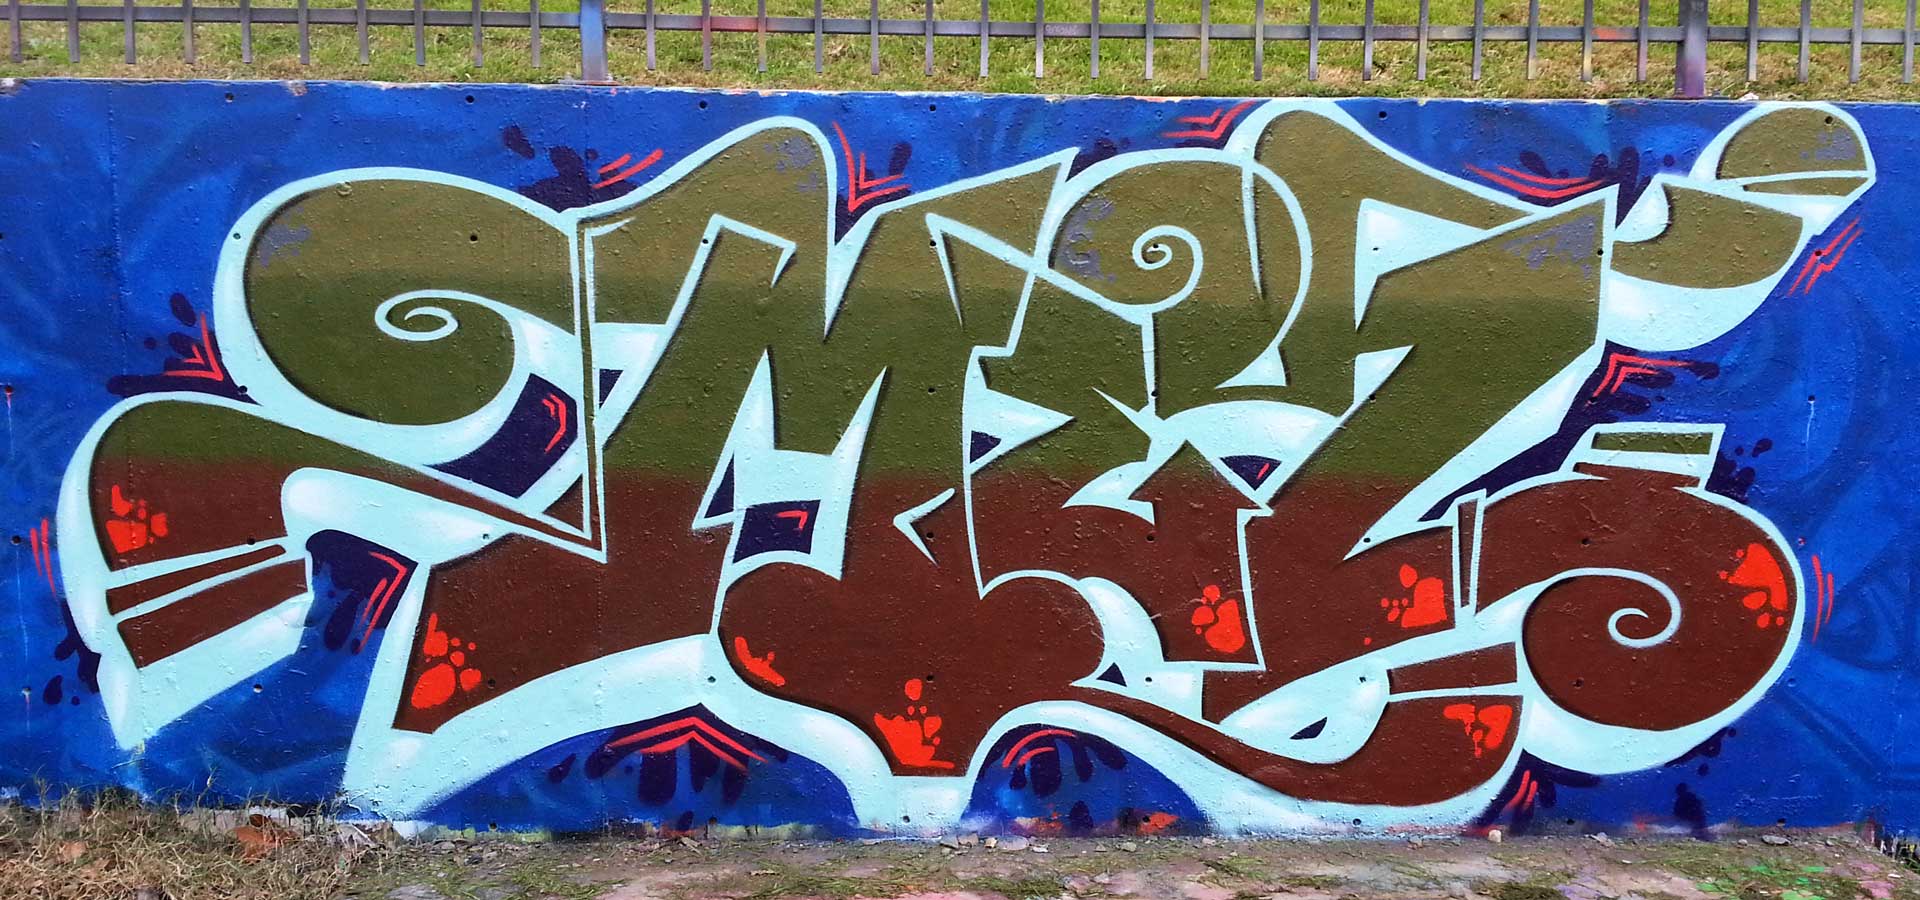 Wall Grafitti Image